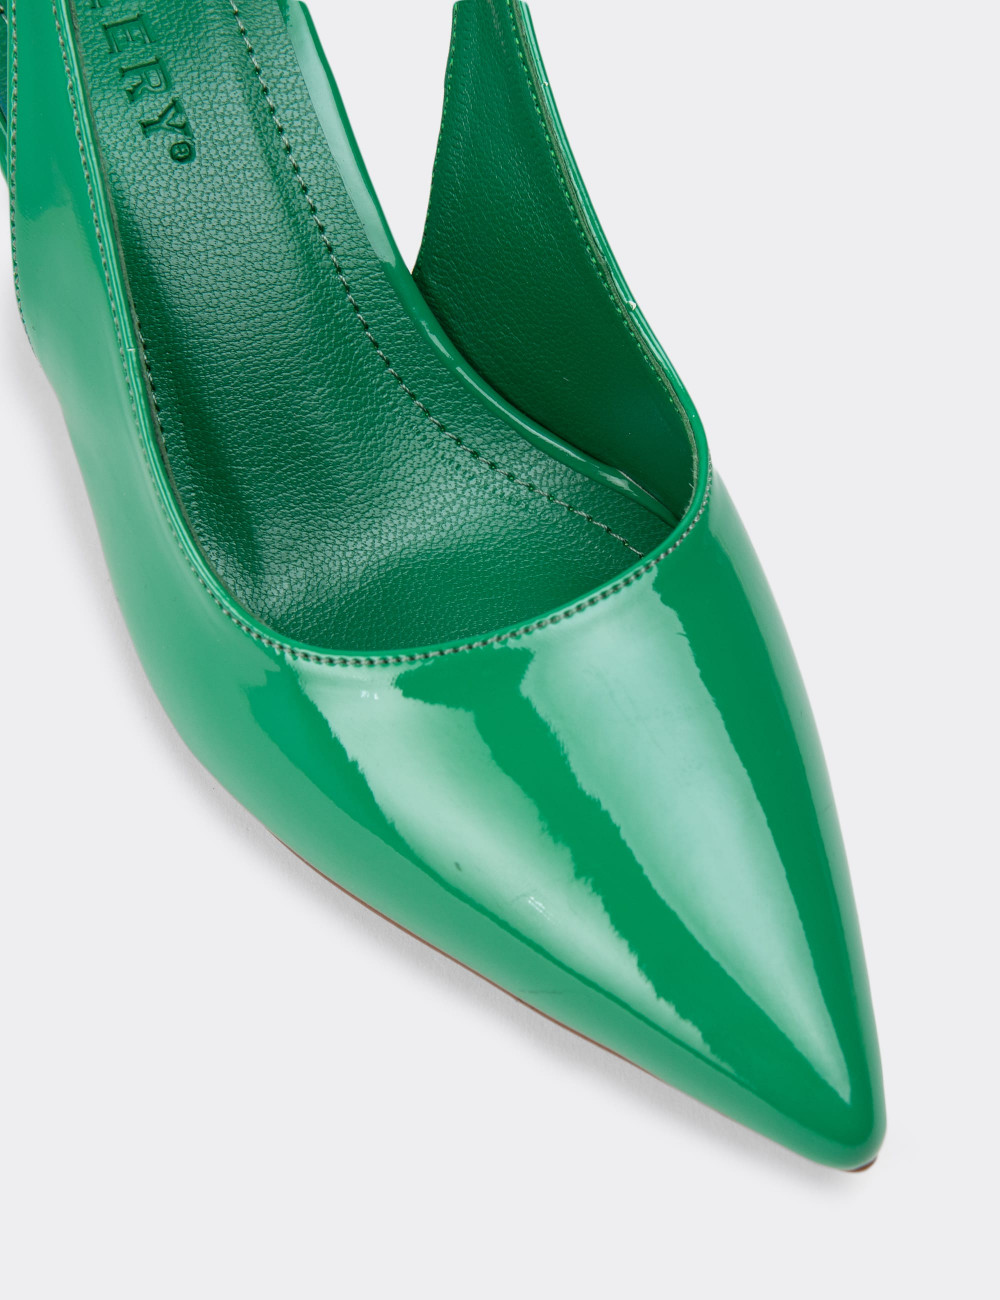 Rugan Yeşil Topuklu Kadın Ayakkabı - K0601ZYSLM01